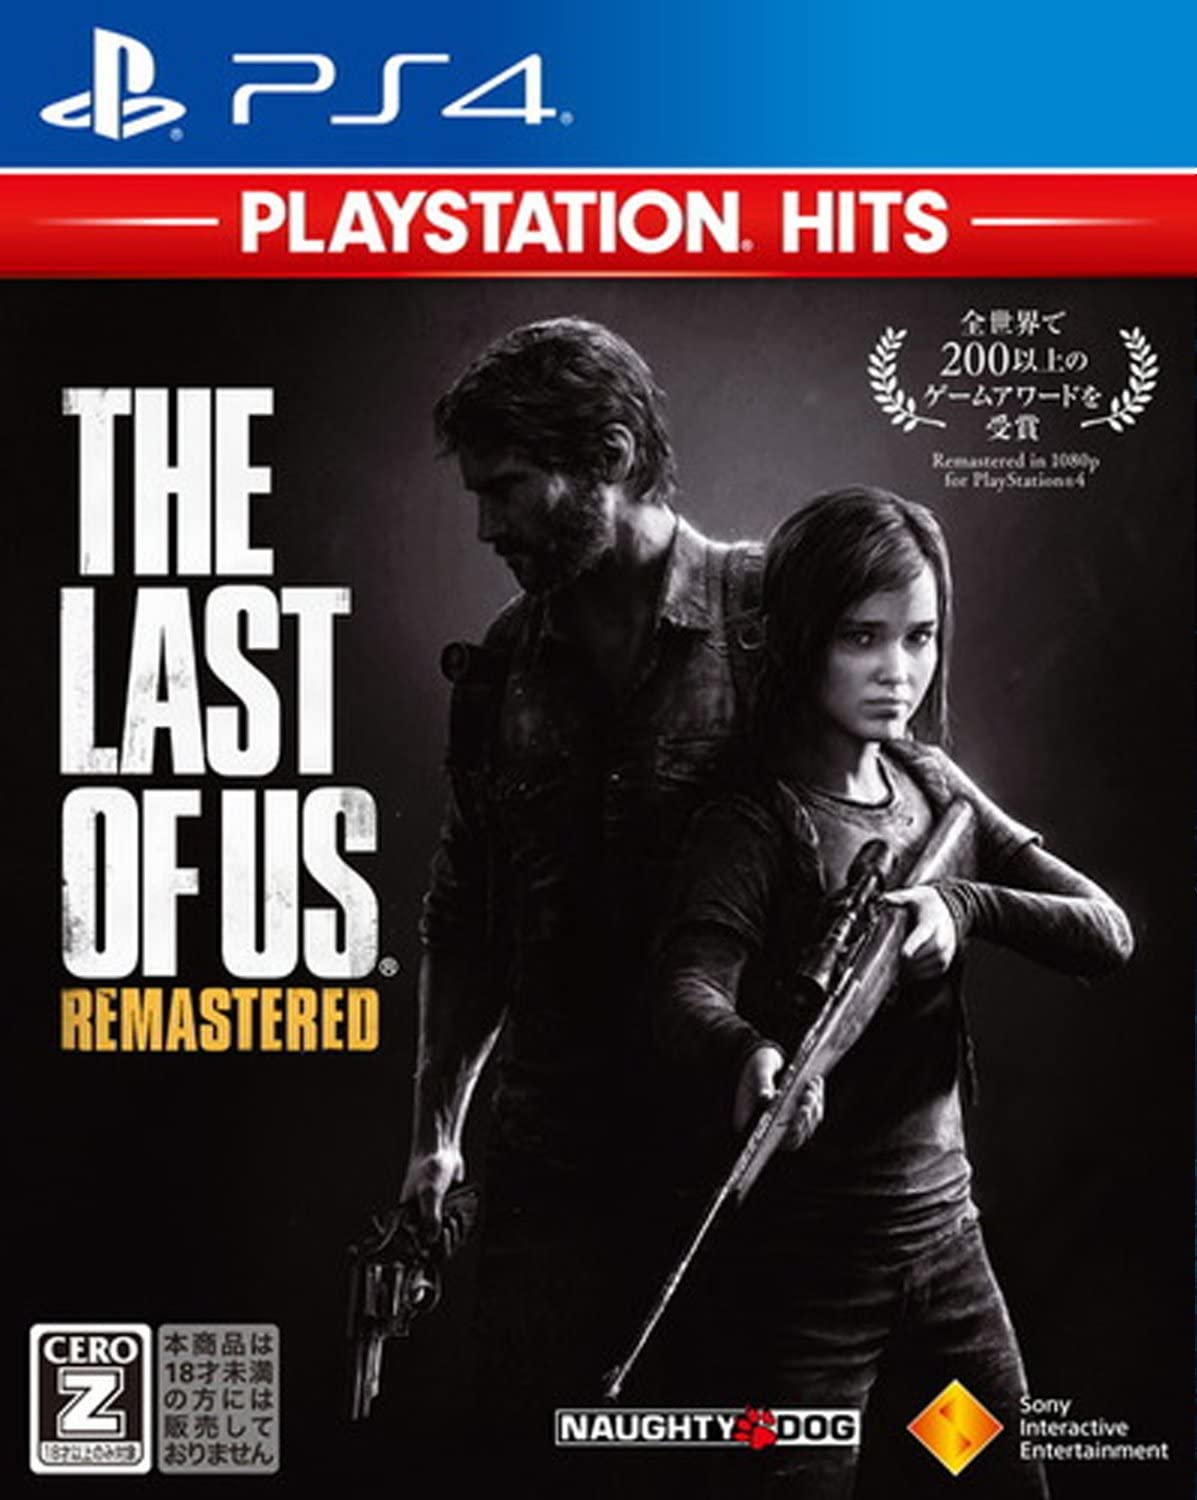 【送料無料】【中古】PS4 PlayStation 4 The Last of Us Remastered PlayStation Hits ラスト・オブ・アス リマスタード 【CEROレーティング「Z」】